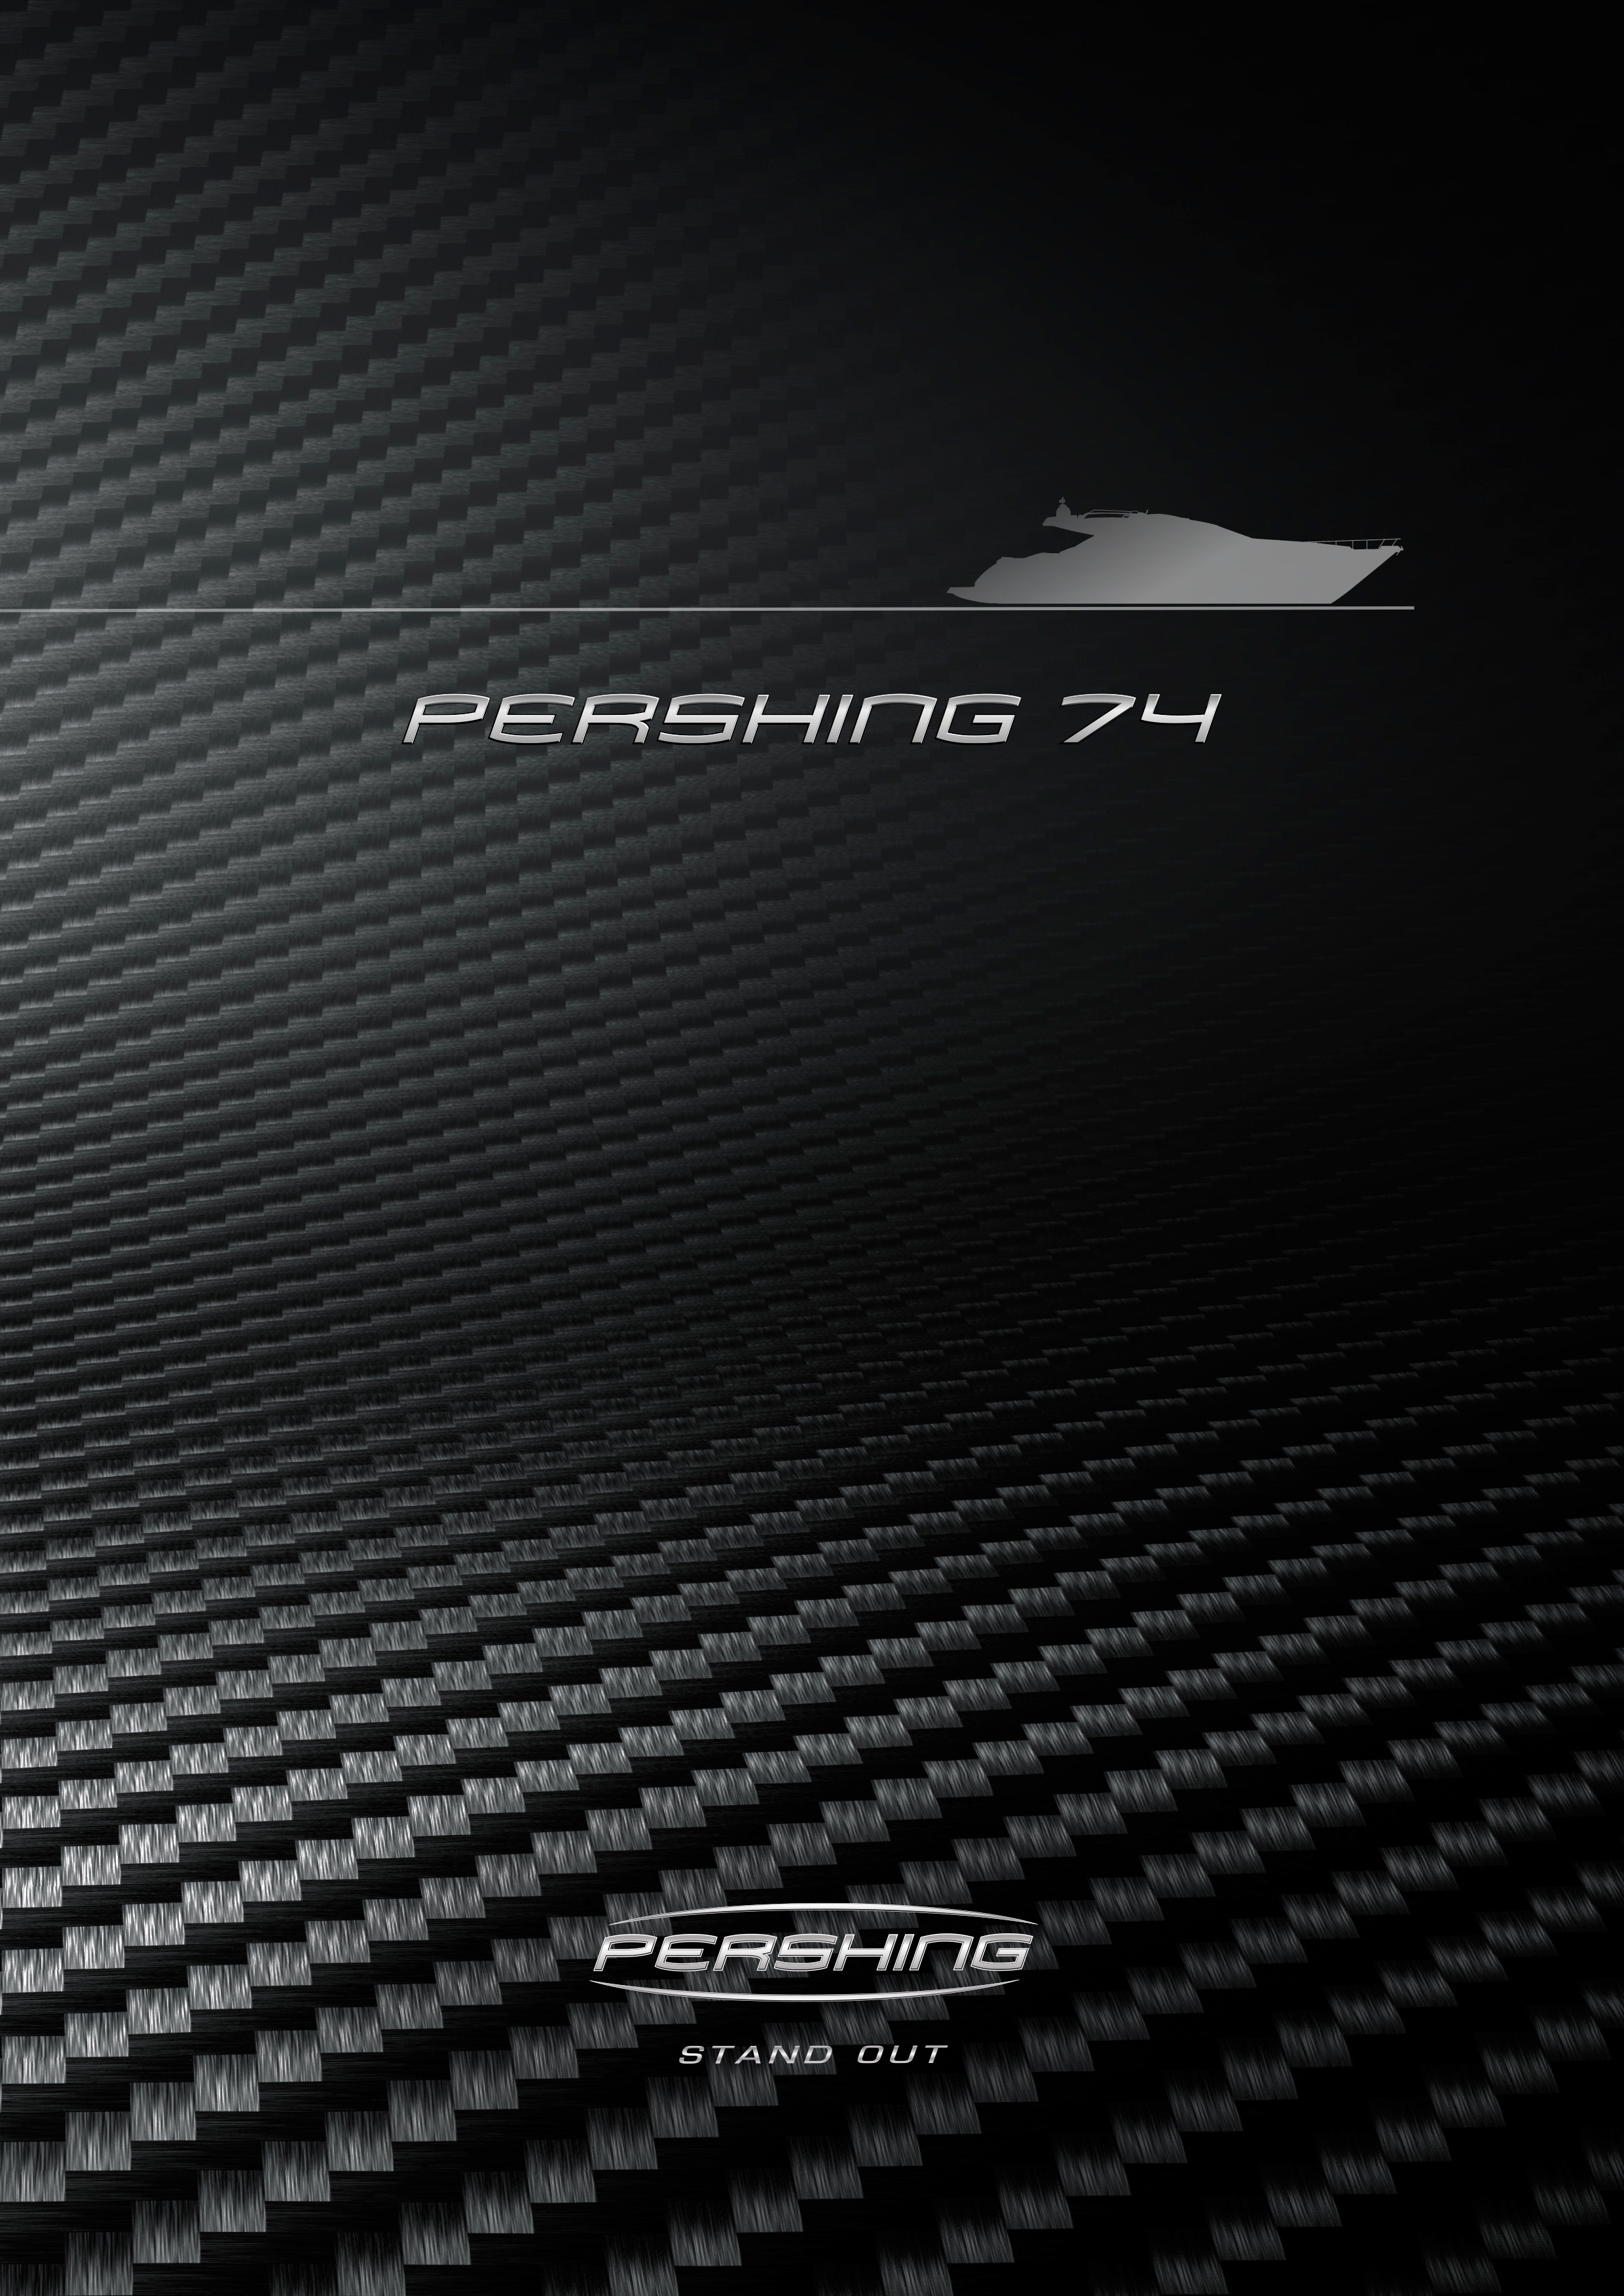 Pershing 74 - StandardEquipment